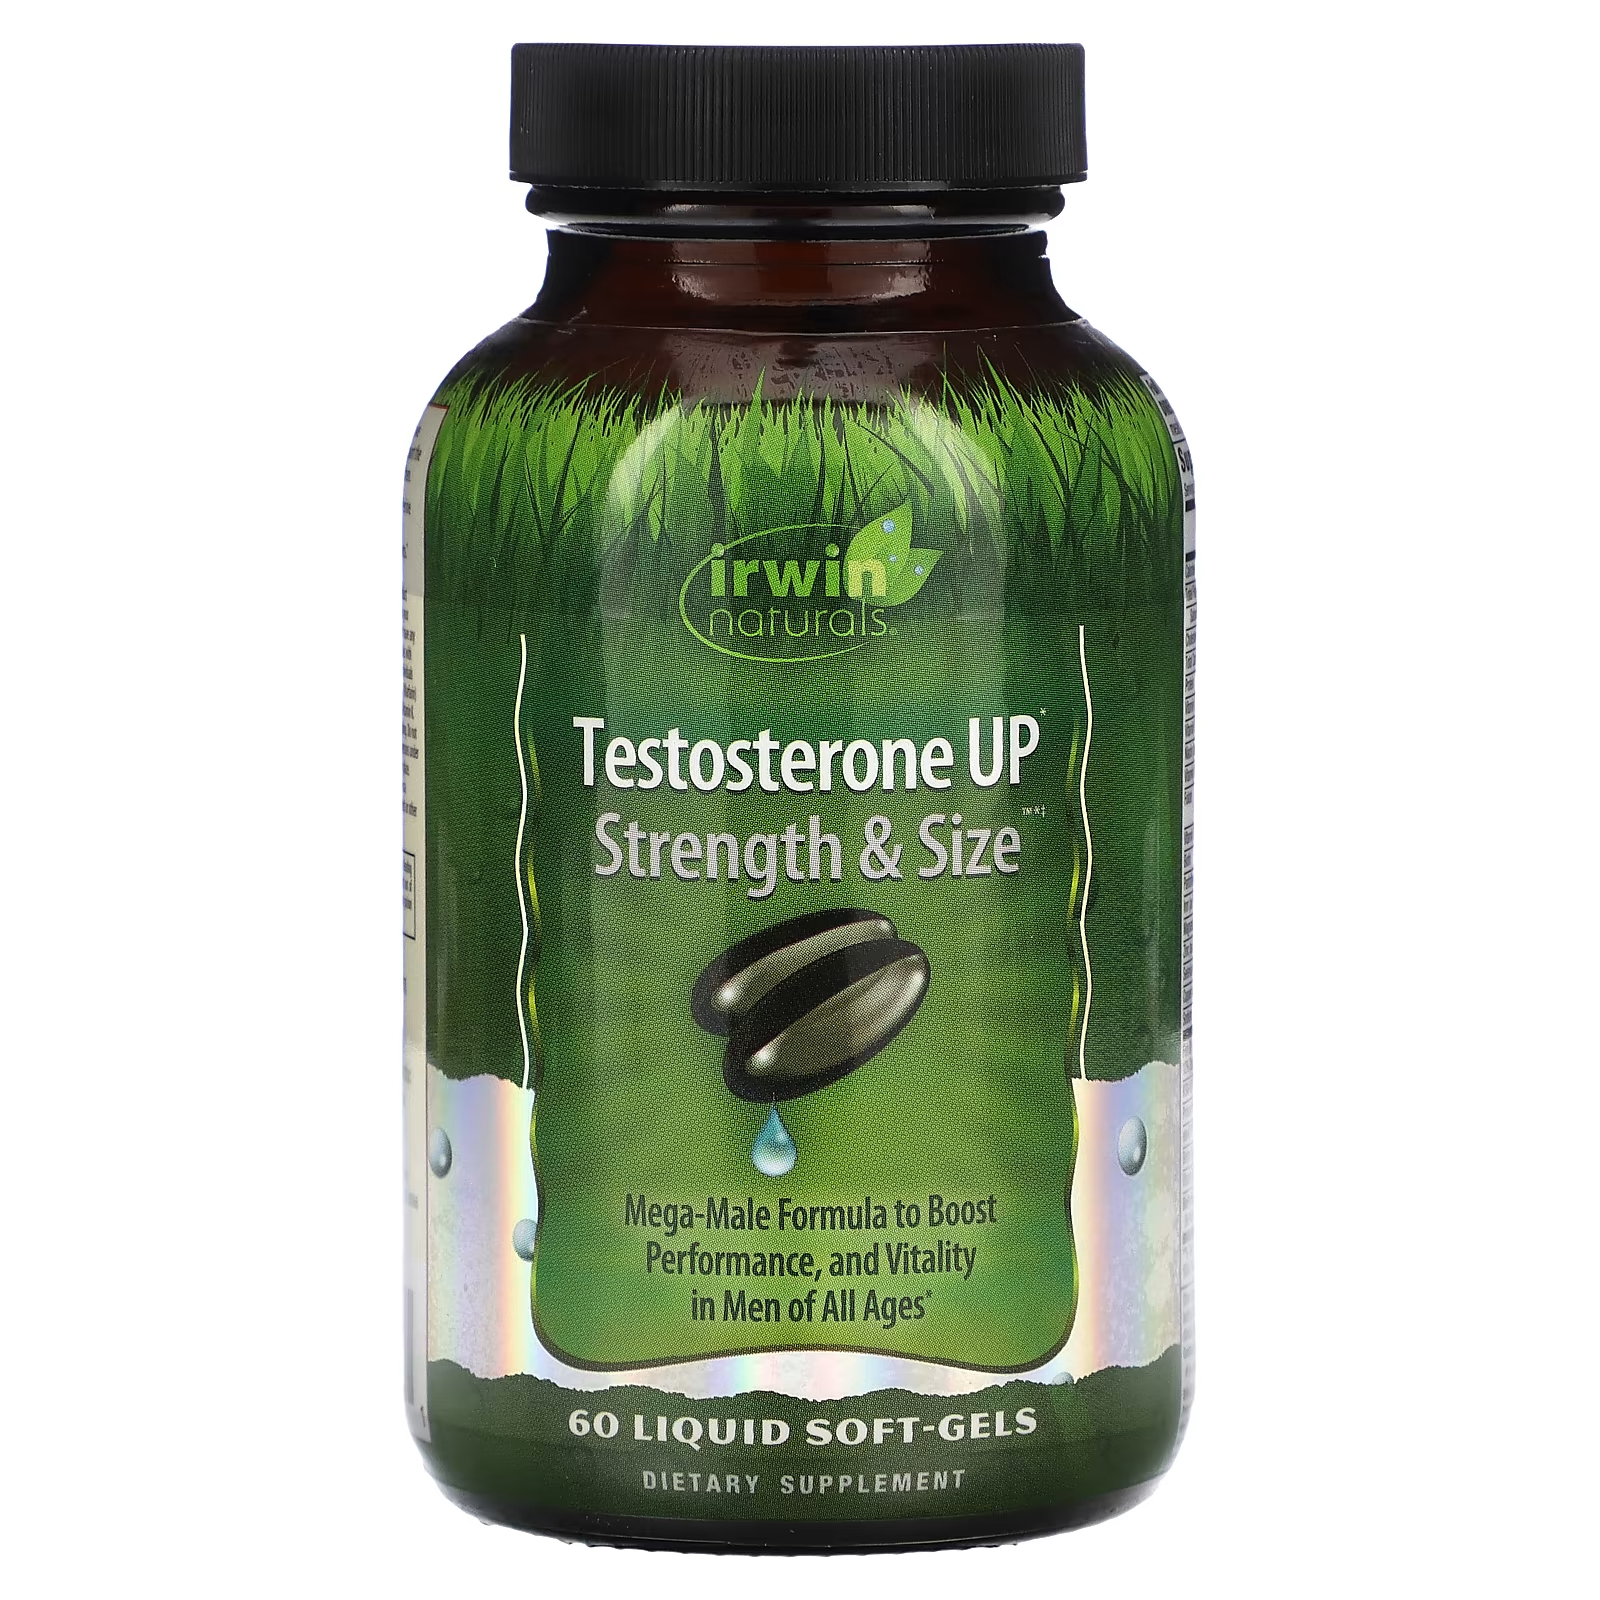 Пищевая добавка Irwin Naturals Testosterone Up Strength & Size, 60 жидких таблеток gat testrol gold es средство повышения уровня тестостерона 60 таблеток